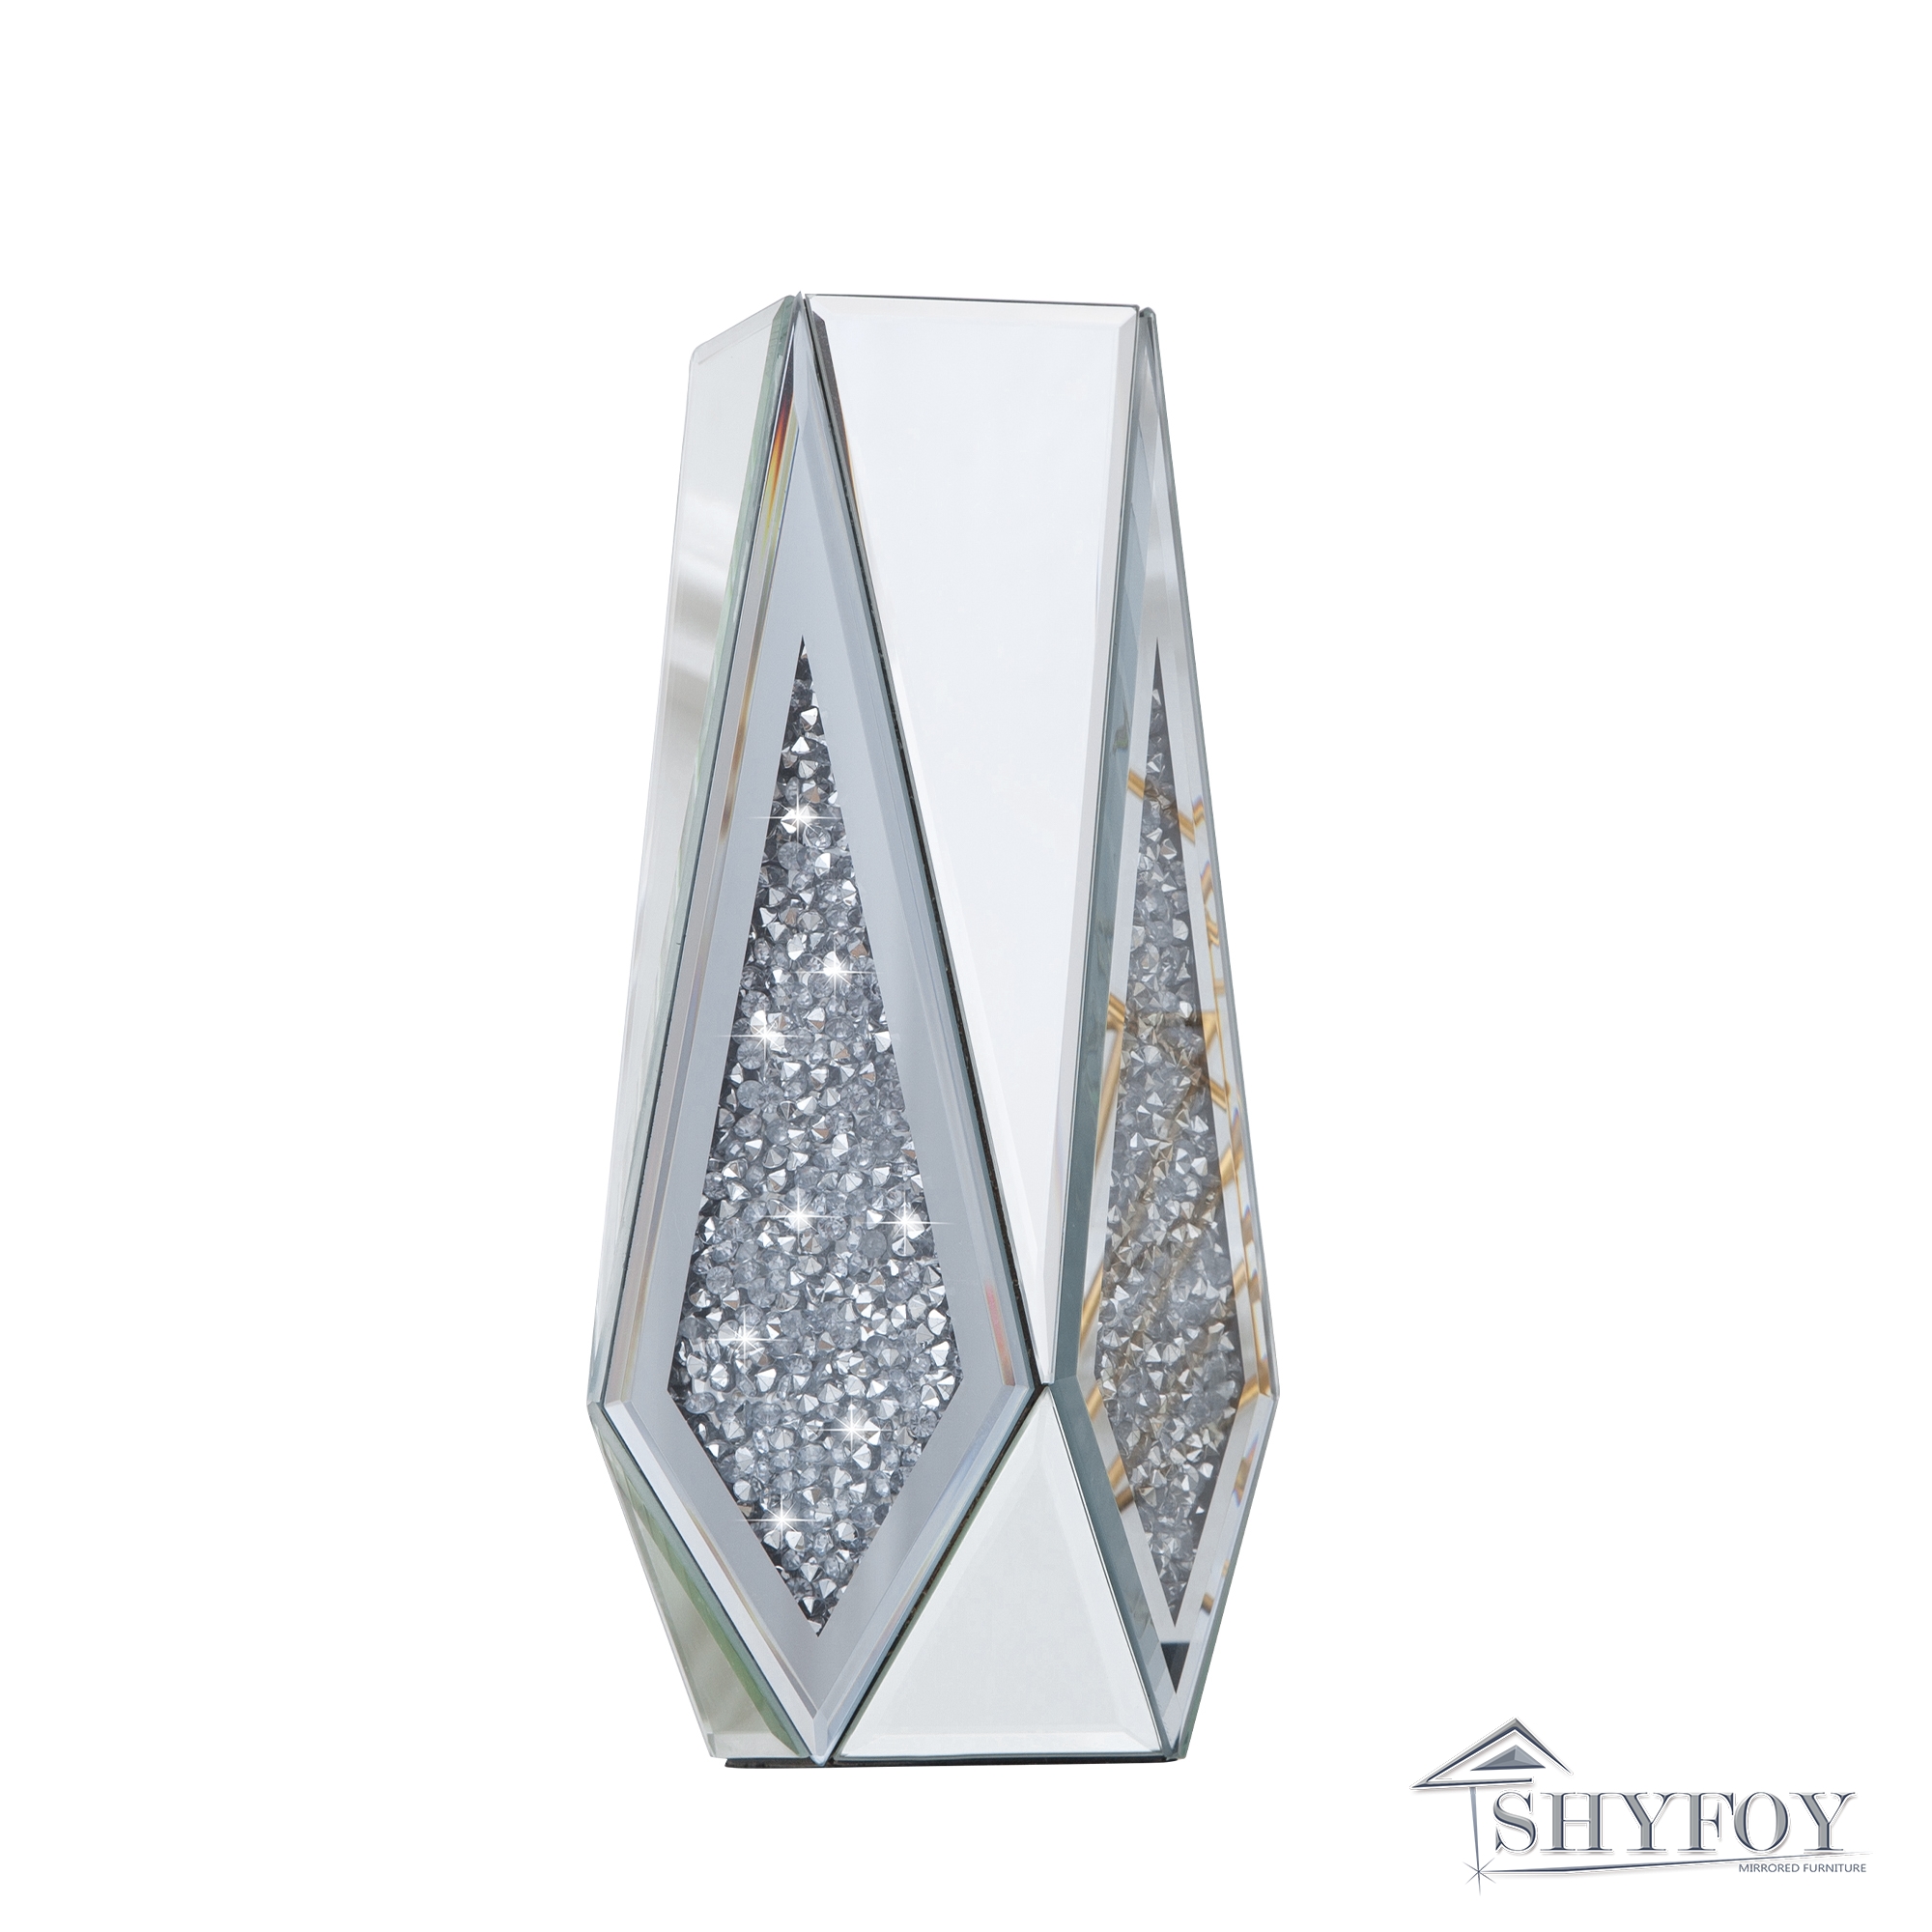 SHYFOY Crushed Diamond Mirror Vase Flower Vase, Silver Crystal